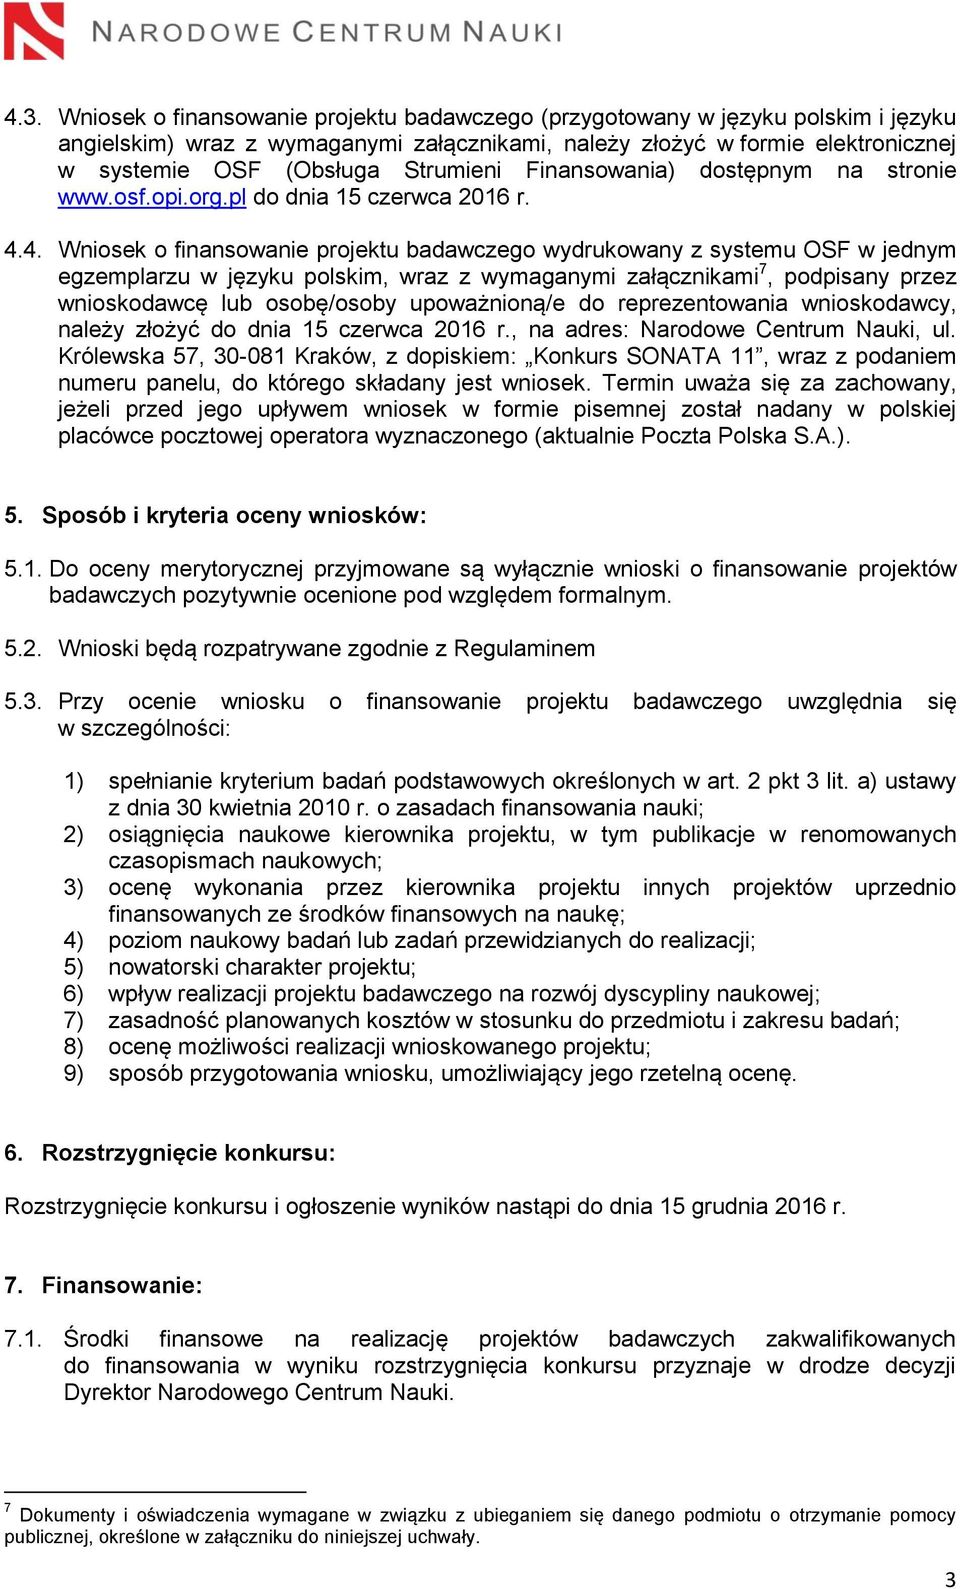 4. Wniosek o finansowanie projektu badawczego wydrukowany z systemu OSF w jednym egzemplarzu w języku polskim, wraz z wymaganymi załącznikami 7, podpisany przez wnioskodawcę lub osobę/osoby